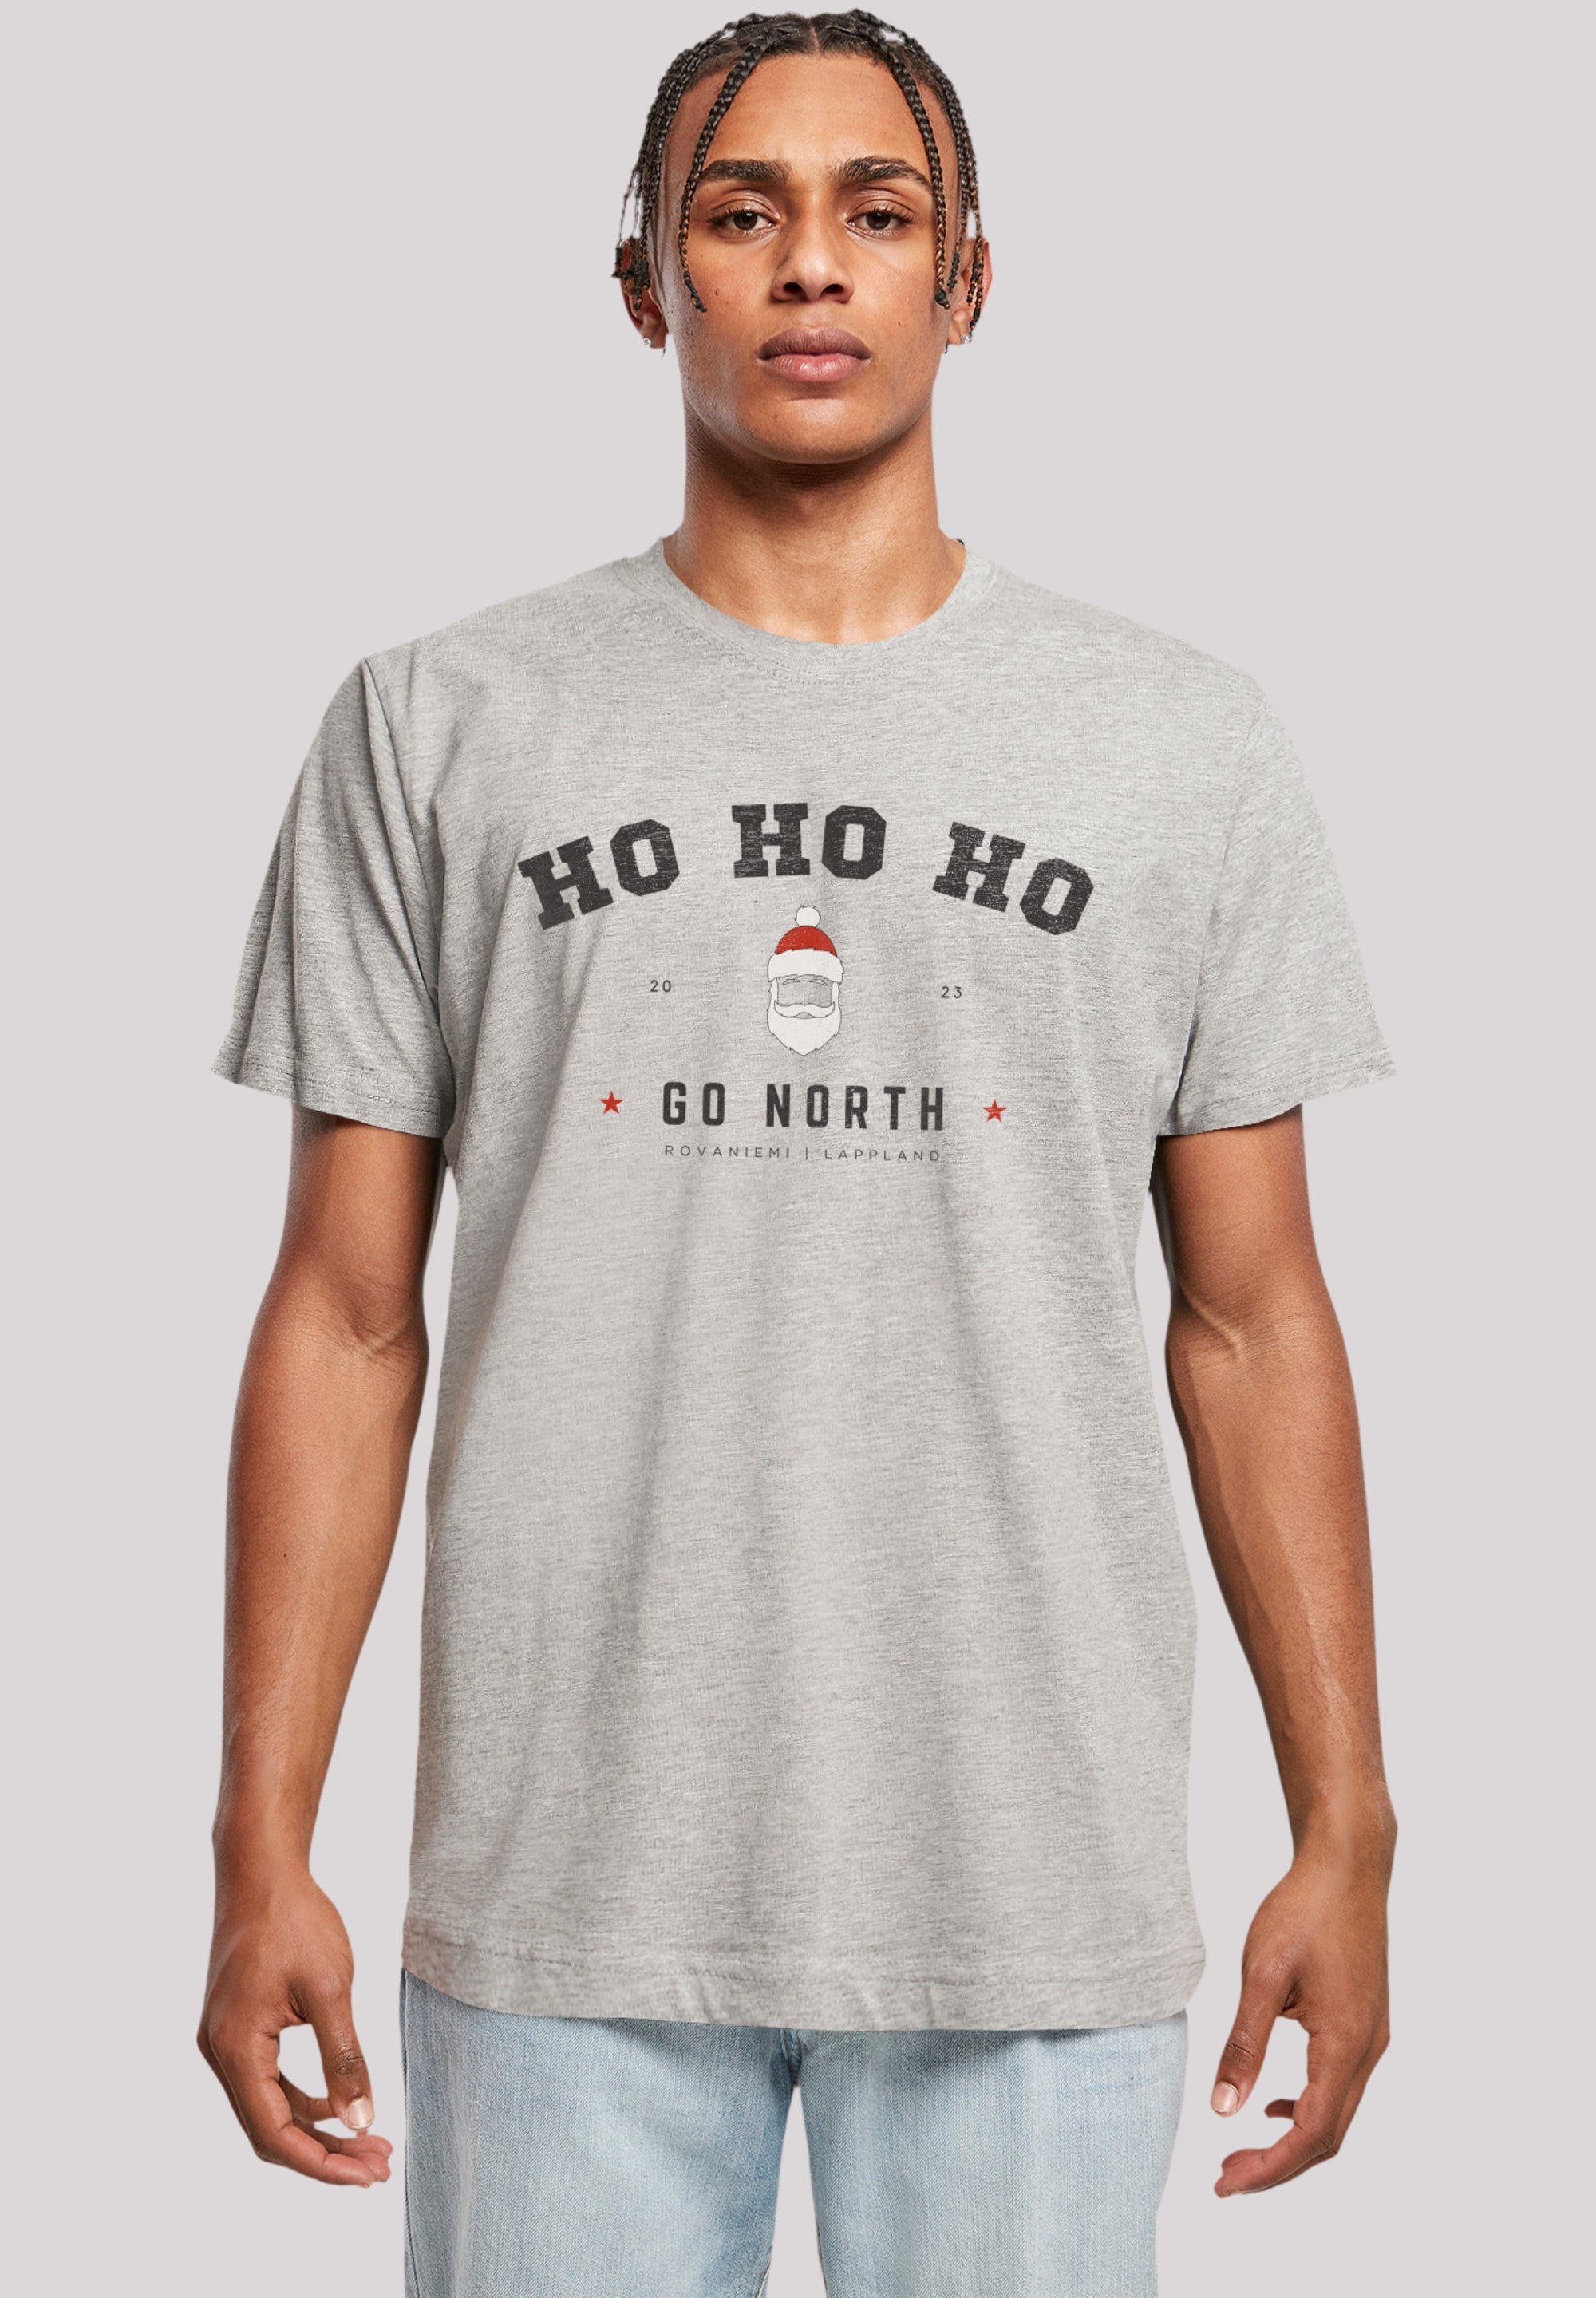 T-Shirt »Ho Ho Ho Santa Claus Weihnachten«, Weihnachten, Geschenk, Logo